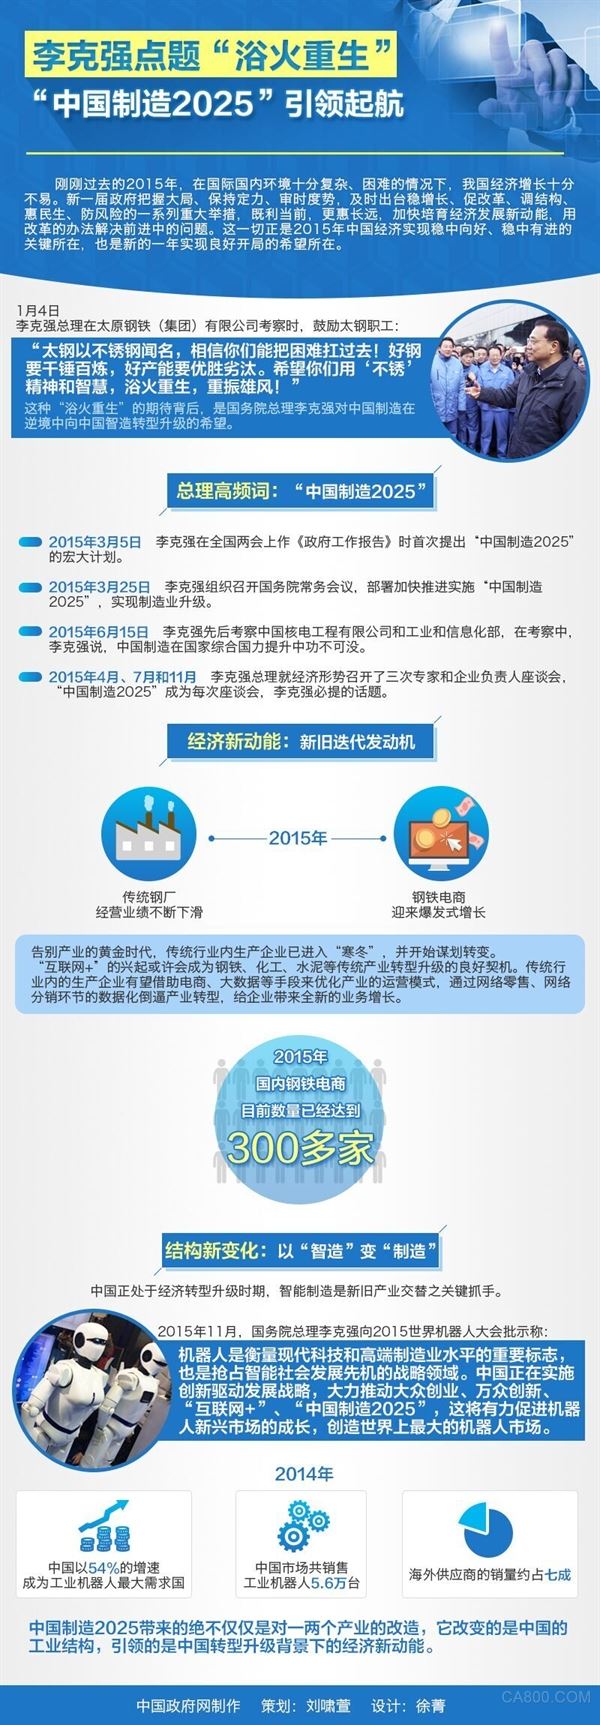 李克强 中国制造2025